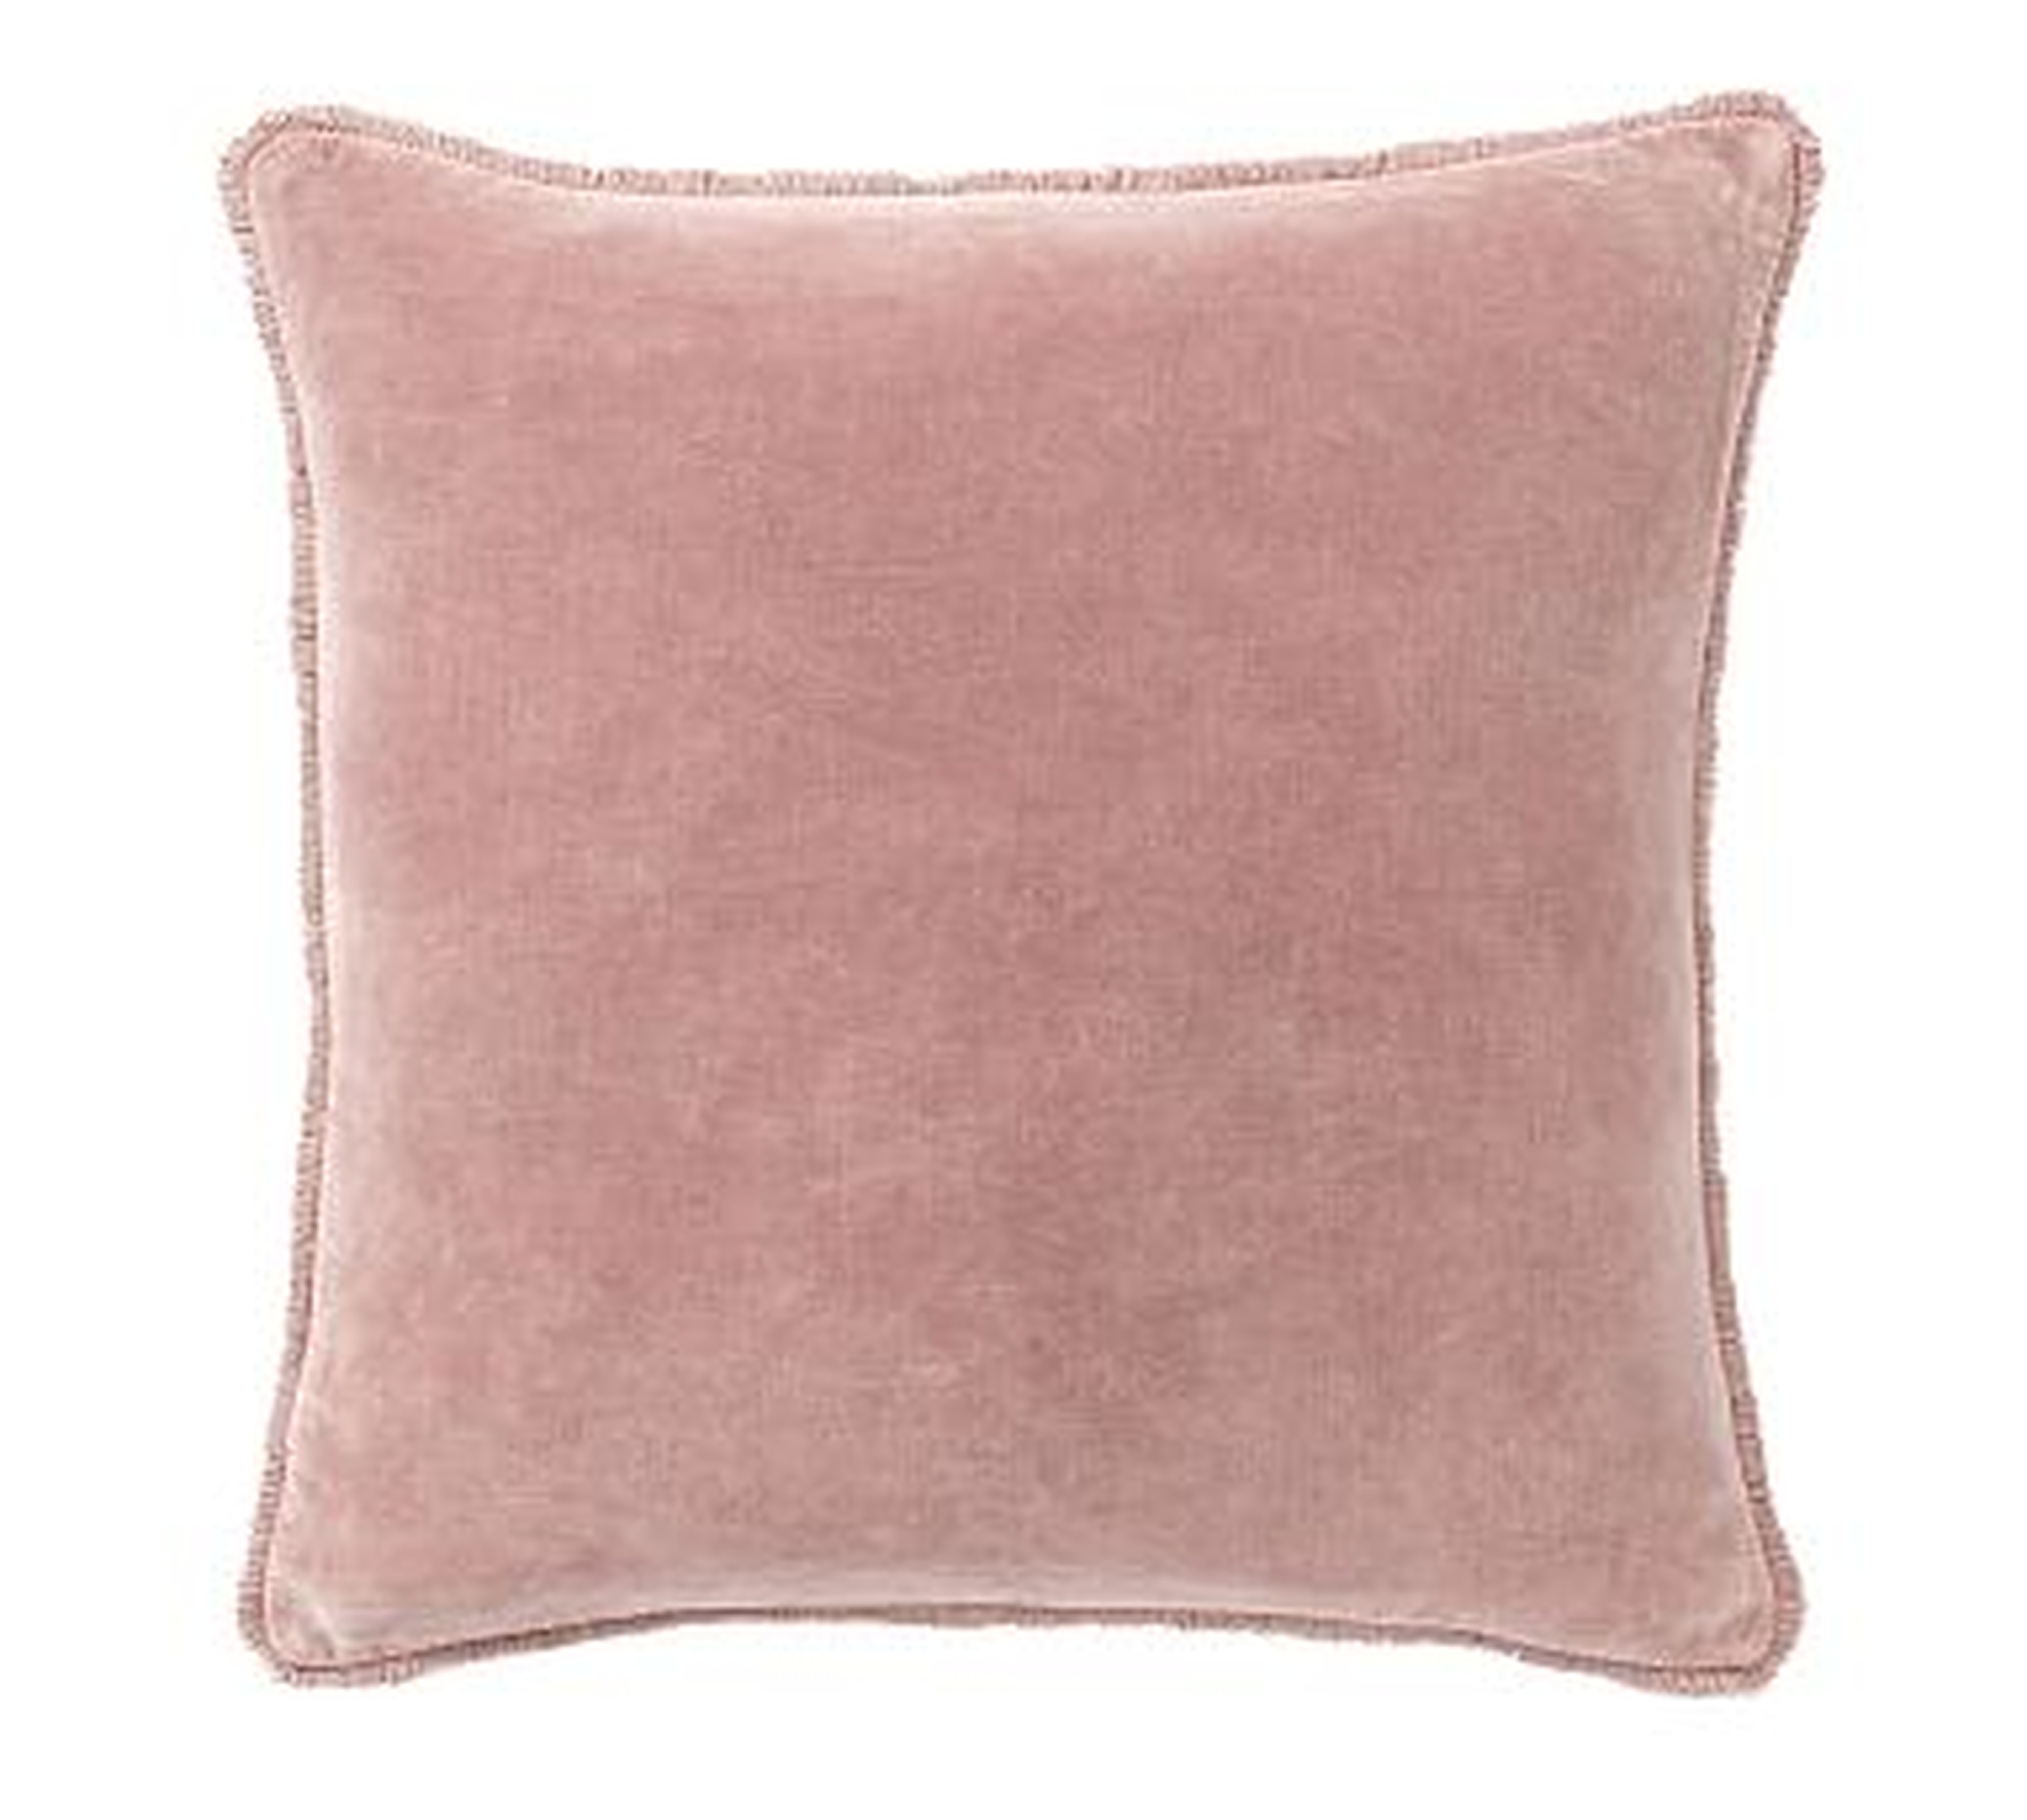 Fringe Velvet Pillow Cover, 22", Blush - Pottery Barn